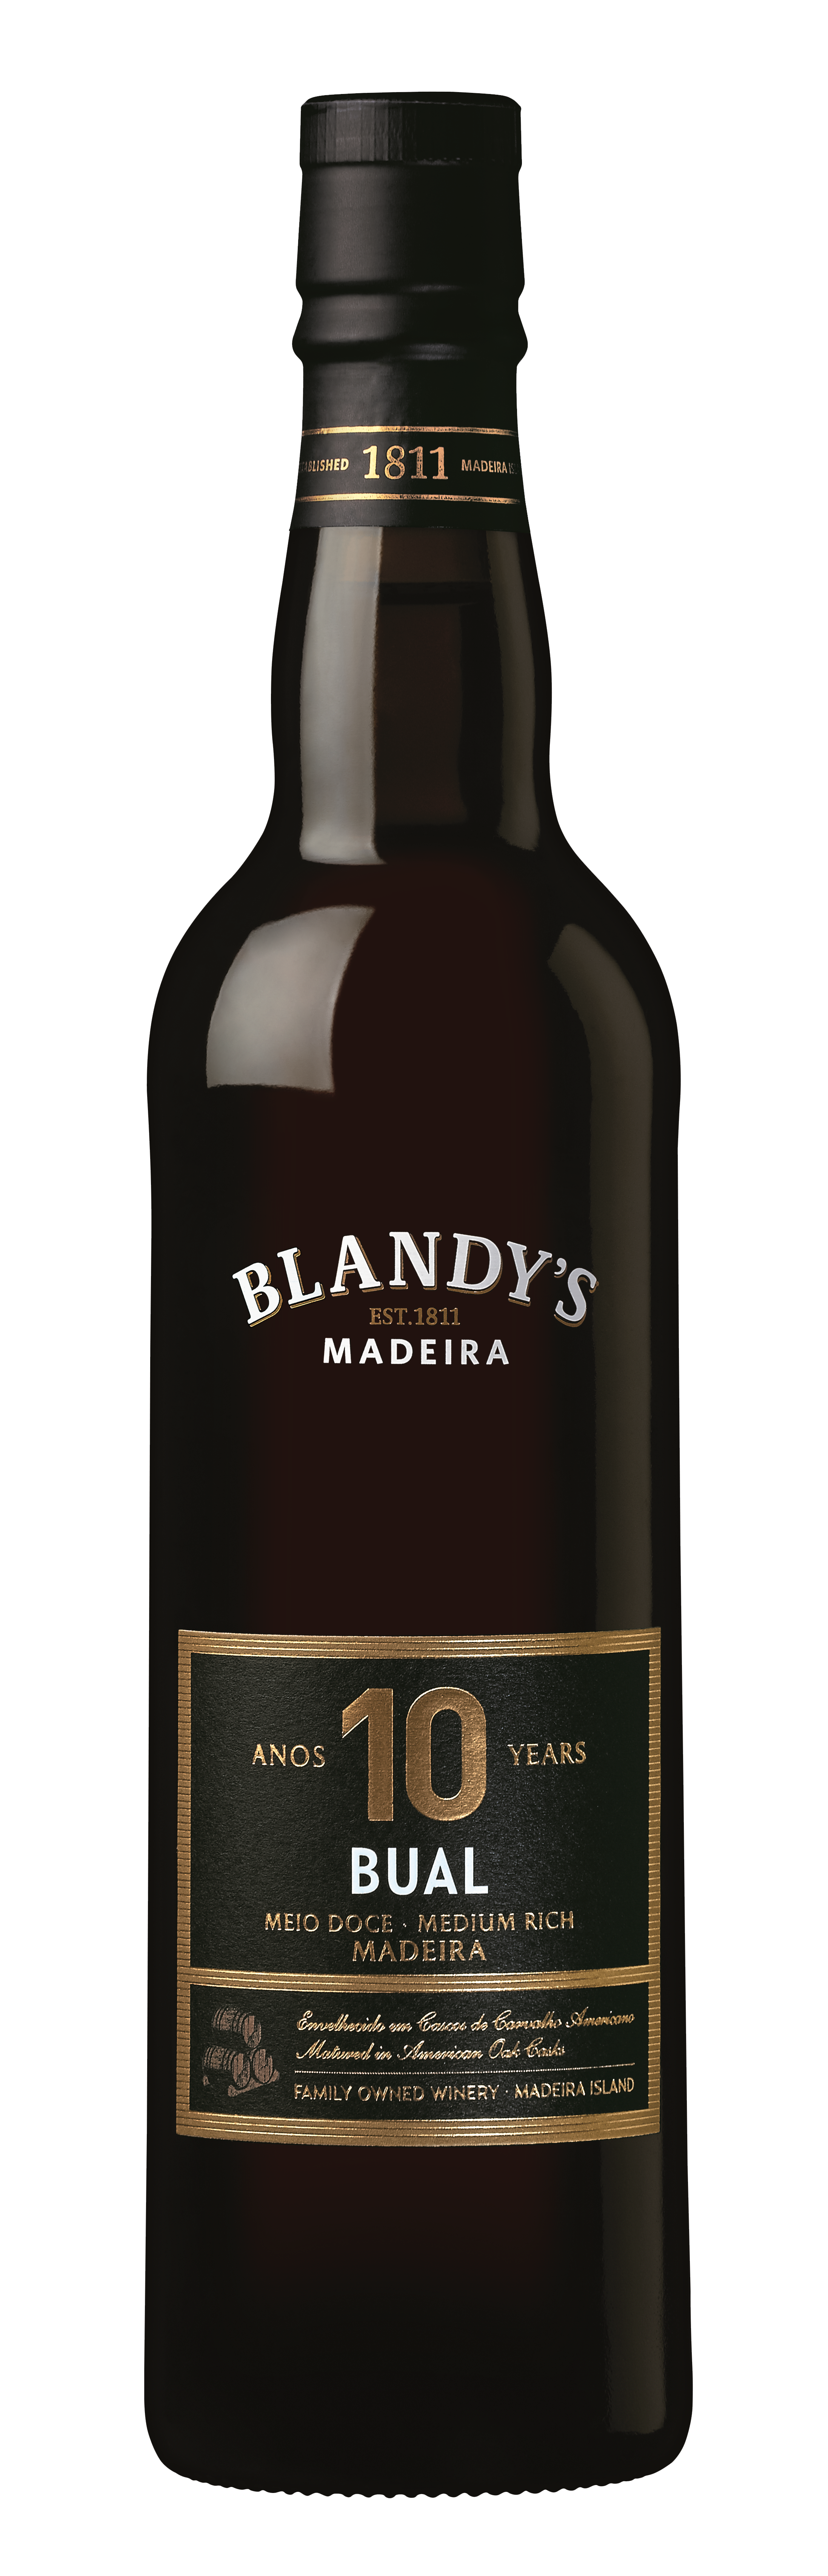 Blandys Madeira Bual 10Yr 750ml